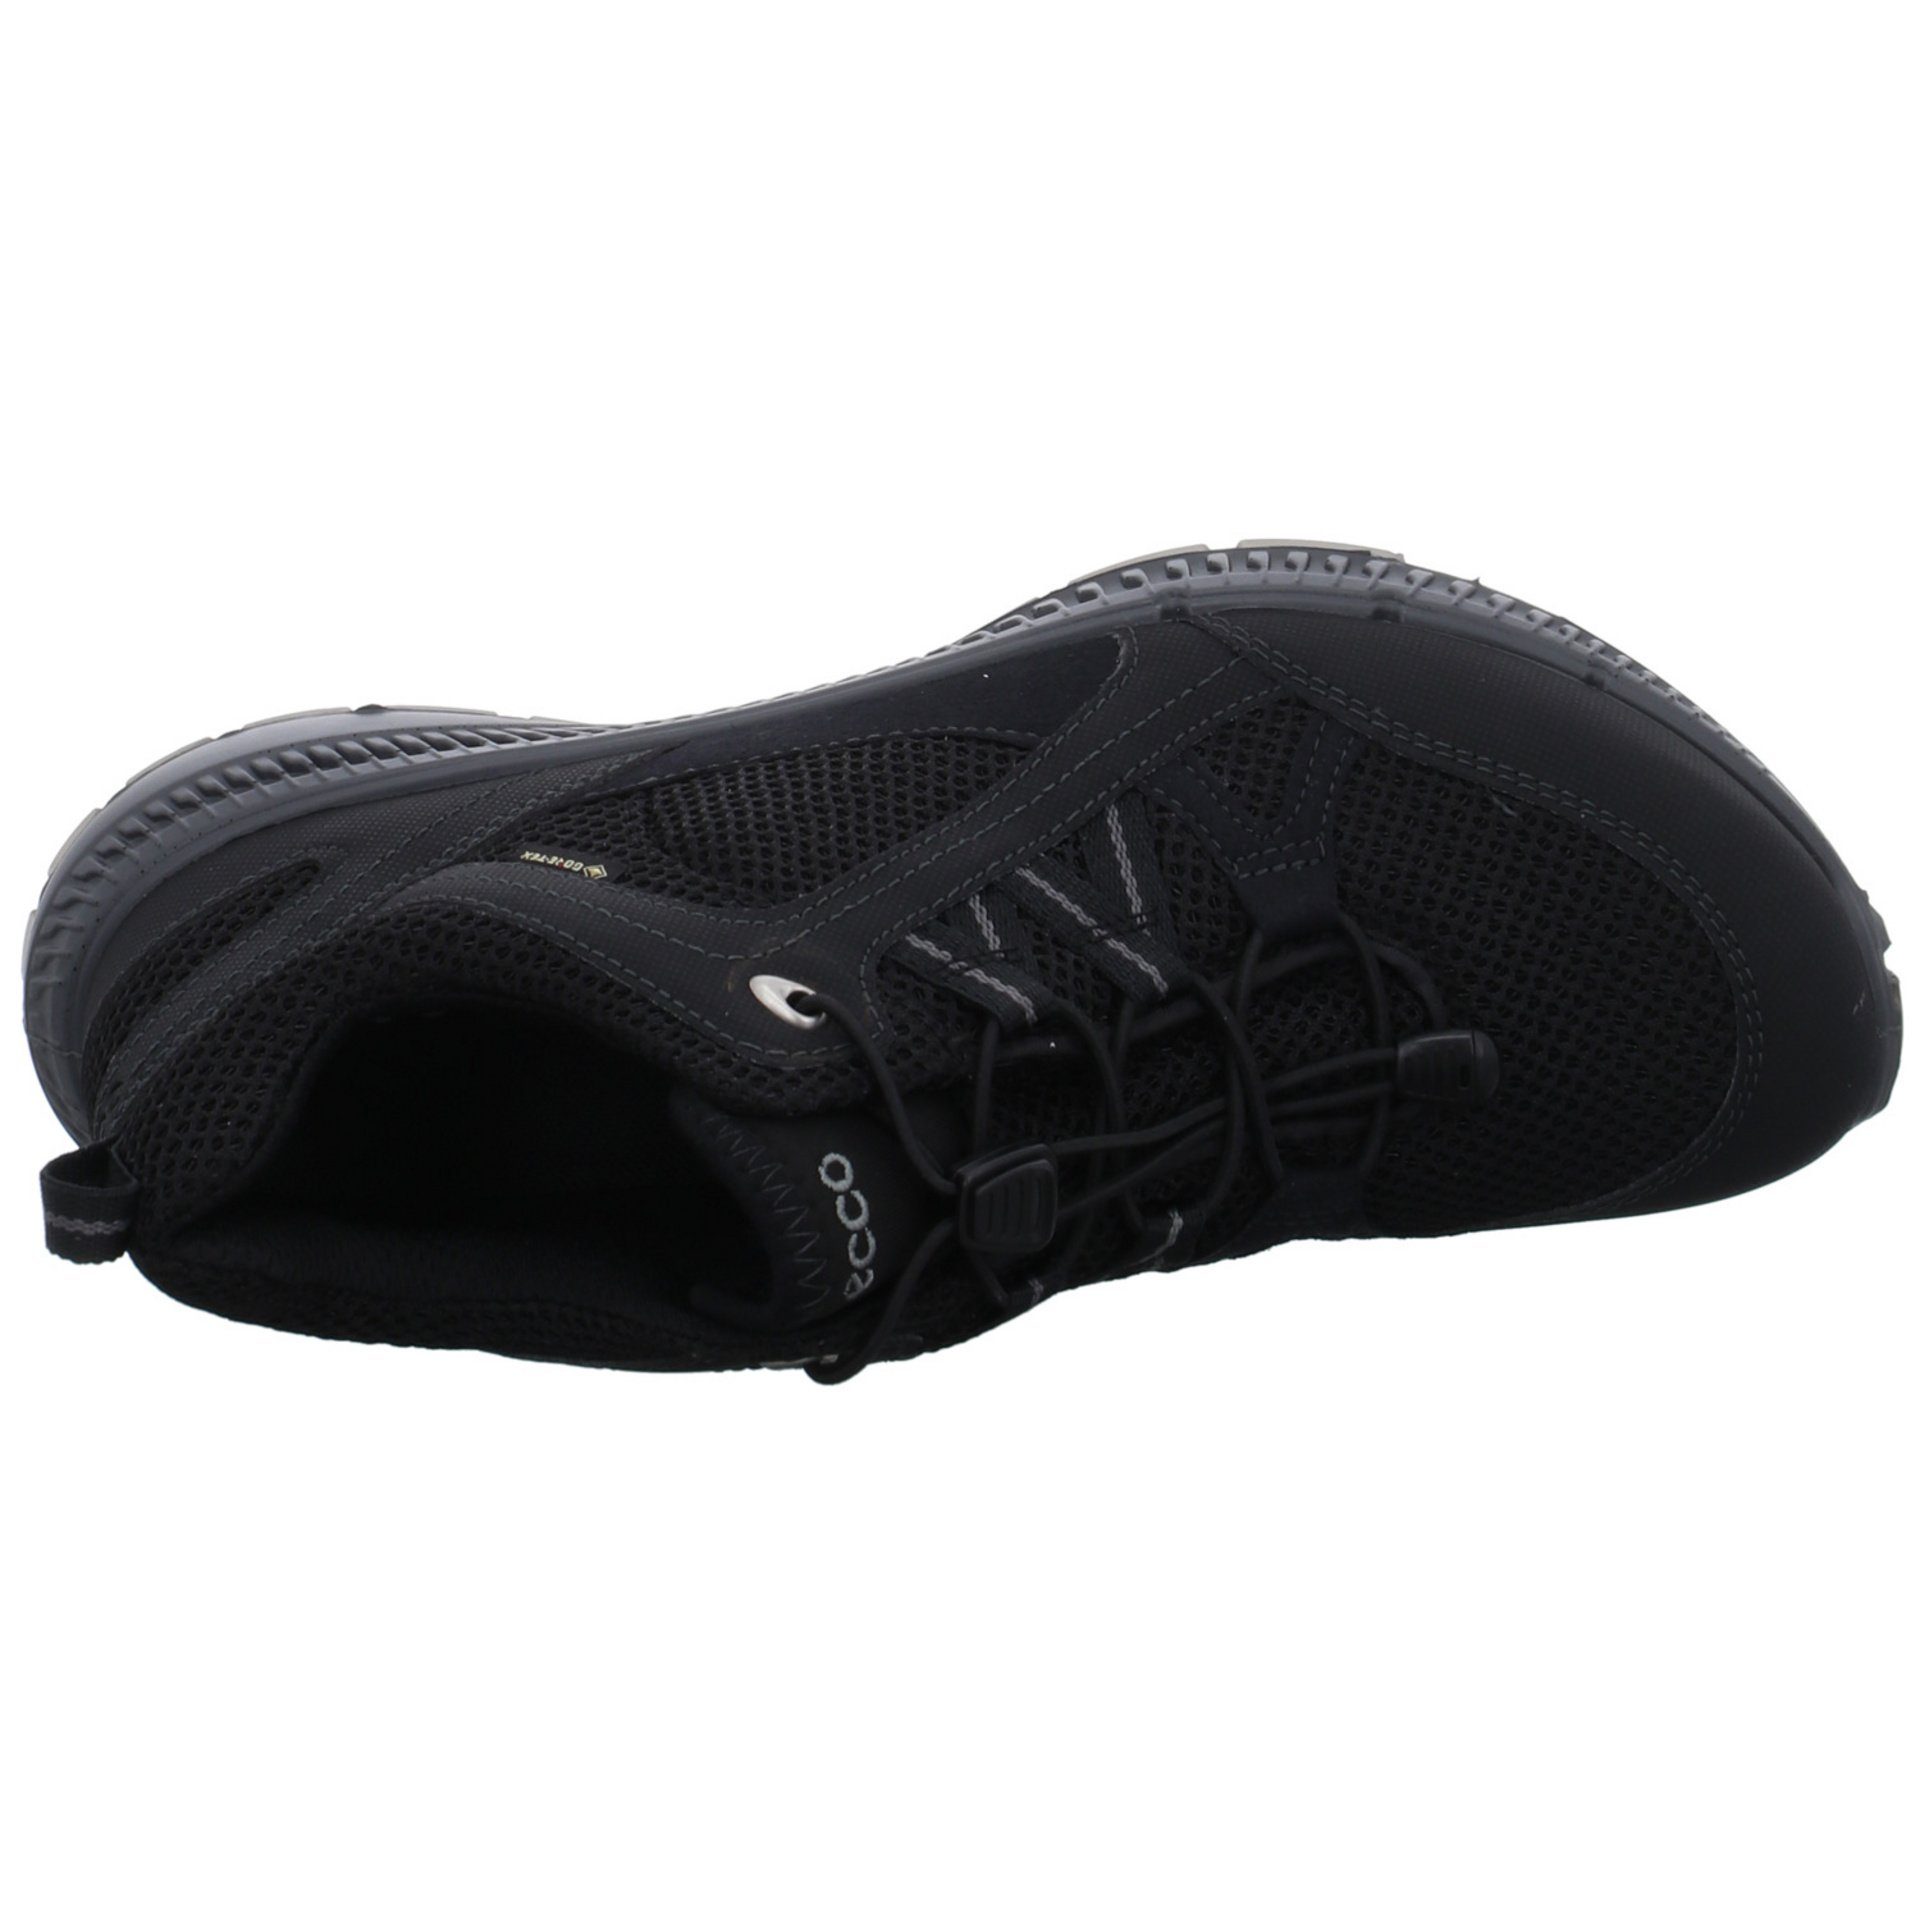 Terracruise Ecco Outdoorschuh Schuhe GTX black Outdoorschuh Outdoor Damen Synthetikkombination